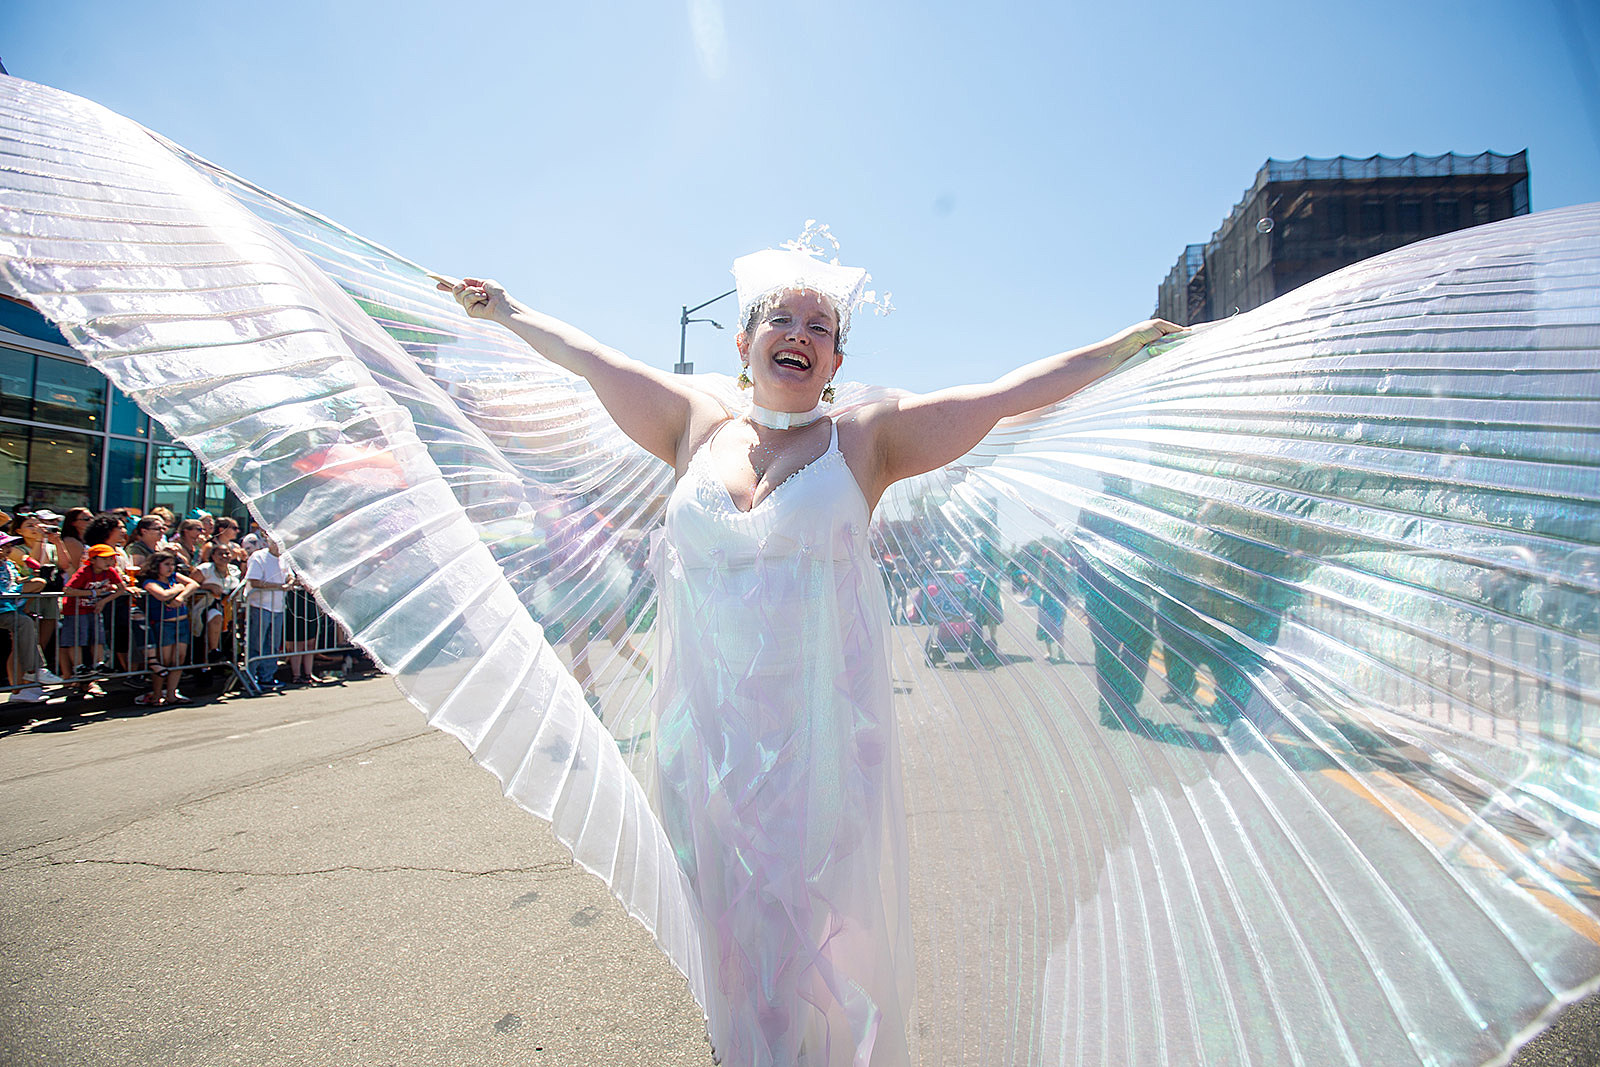 The 2018 Coney Island Mermaid Parade